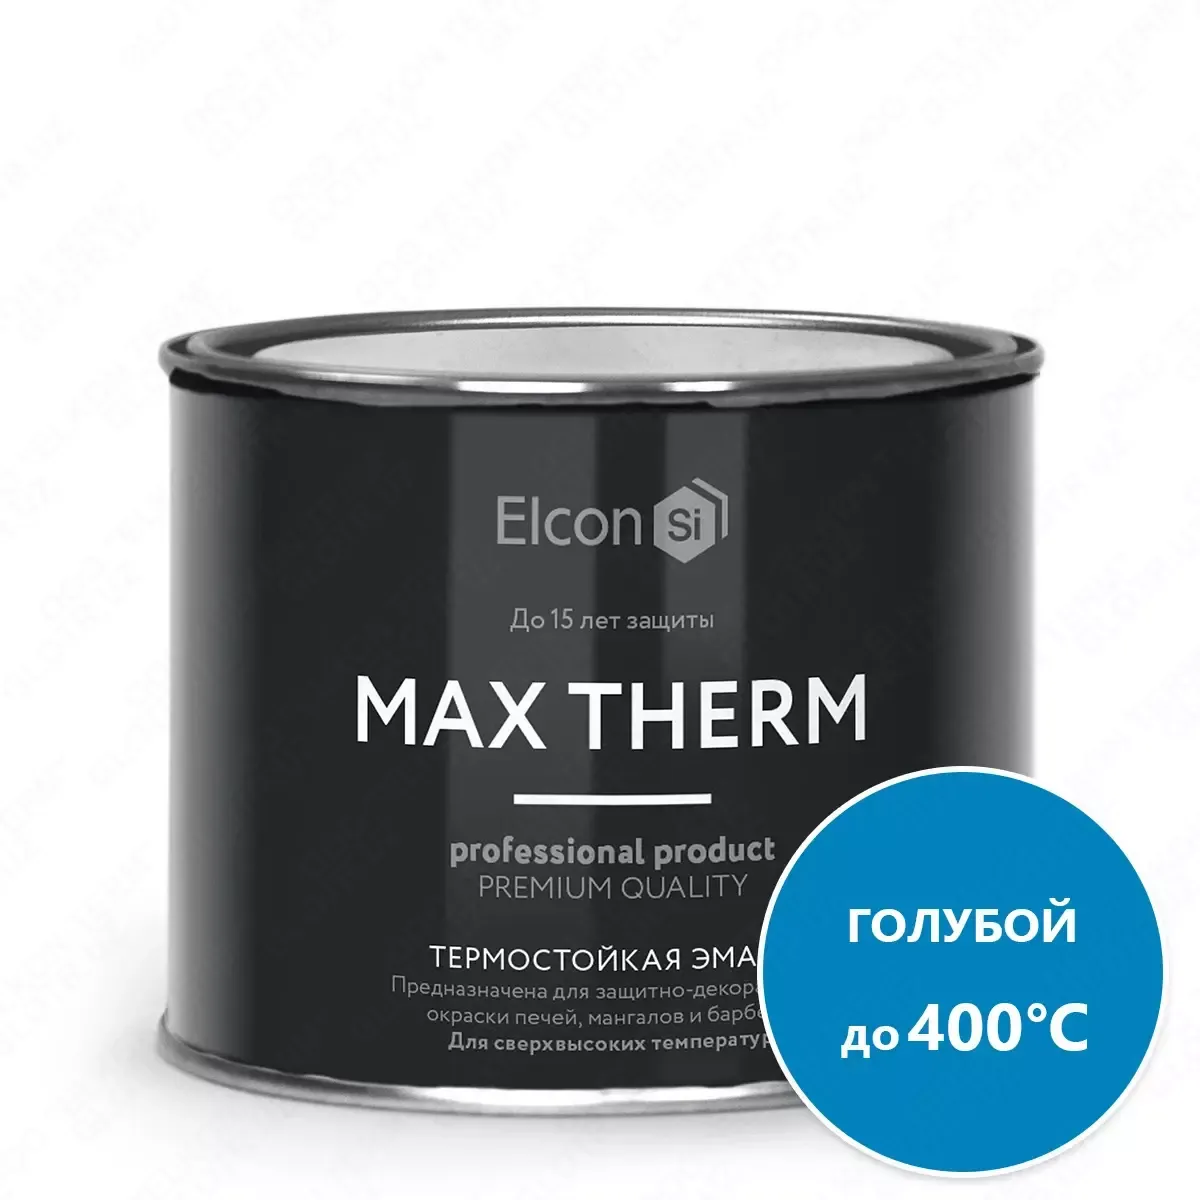 Термостойкая антикоррозийная эмаль Max Therm голубой 0,4кг; 400°С#1